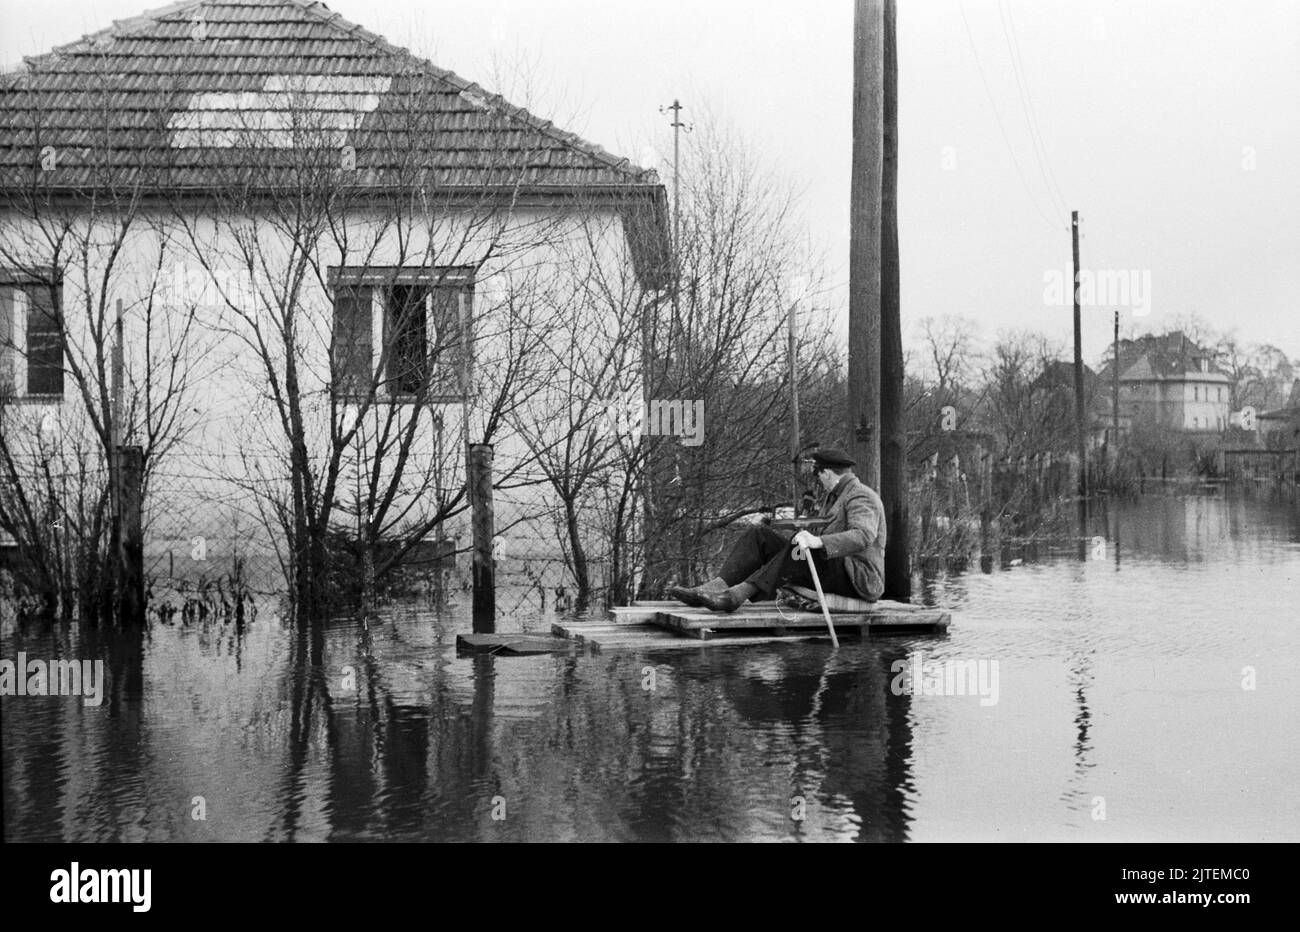 Die Wuhle, ein kleiner Nebenfluss der Spree, bringt Hochwasser nach Kaulsdorf im Bezirk Marzahn-Hellersdorf, hier paddelt ein Mann auf einem notdürftig zusammengeschusterten Floss über die gefluteten Straßen, Berlin, Deutschland 1947. Foto Stock